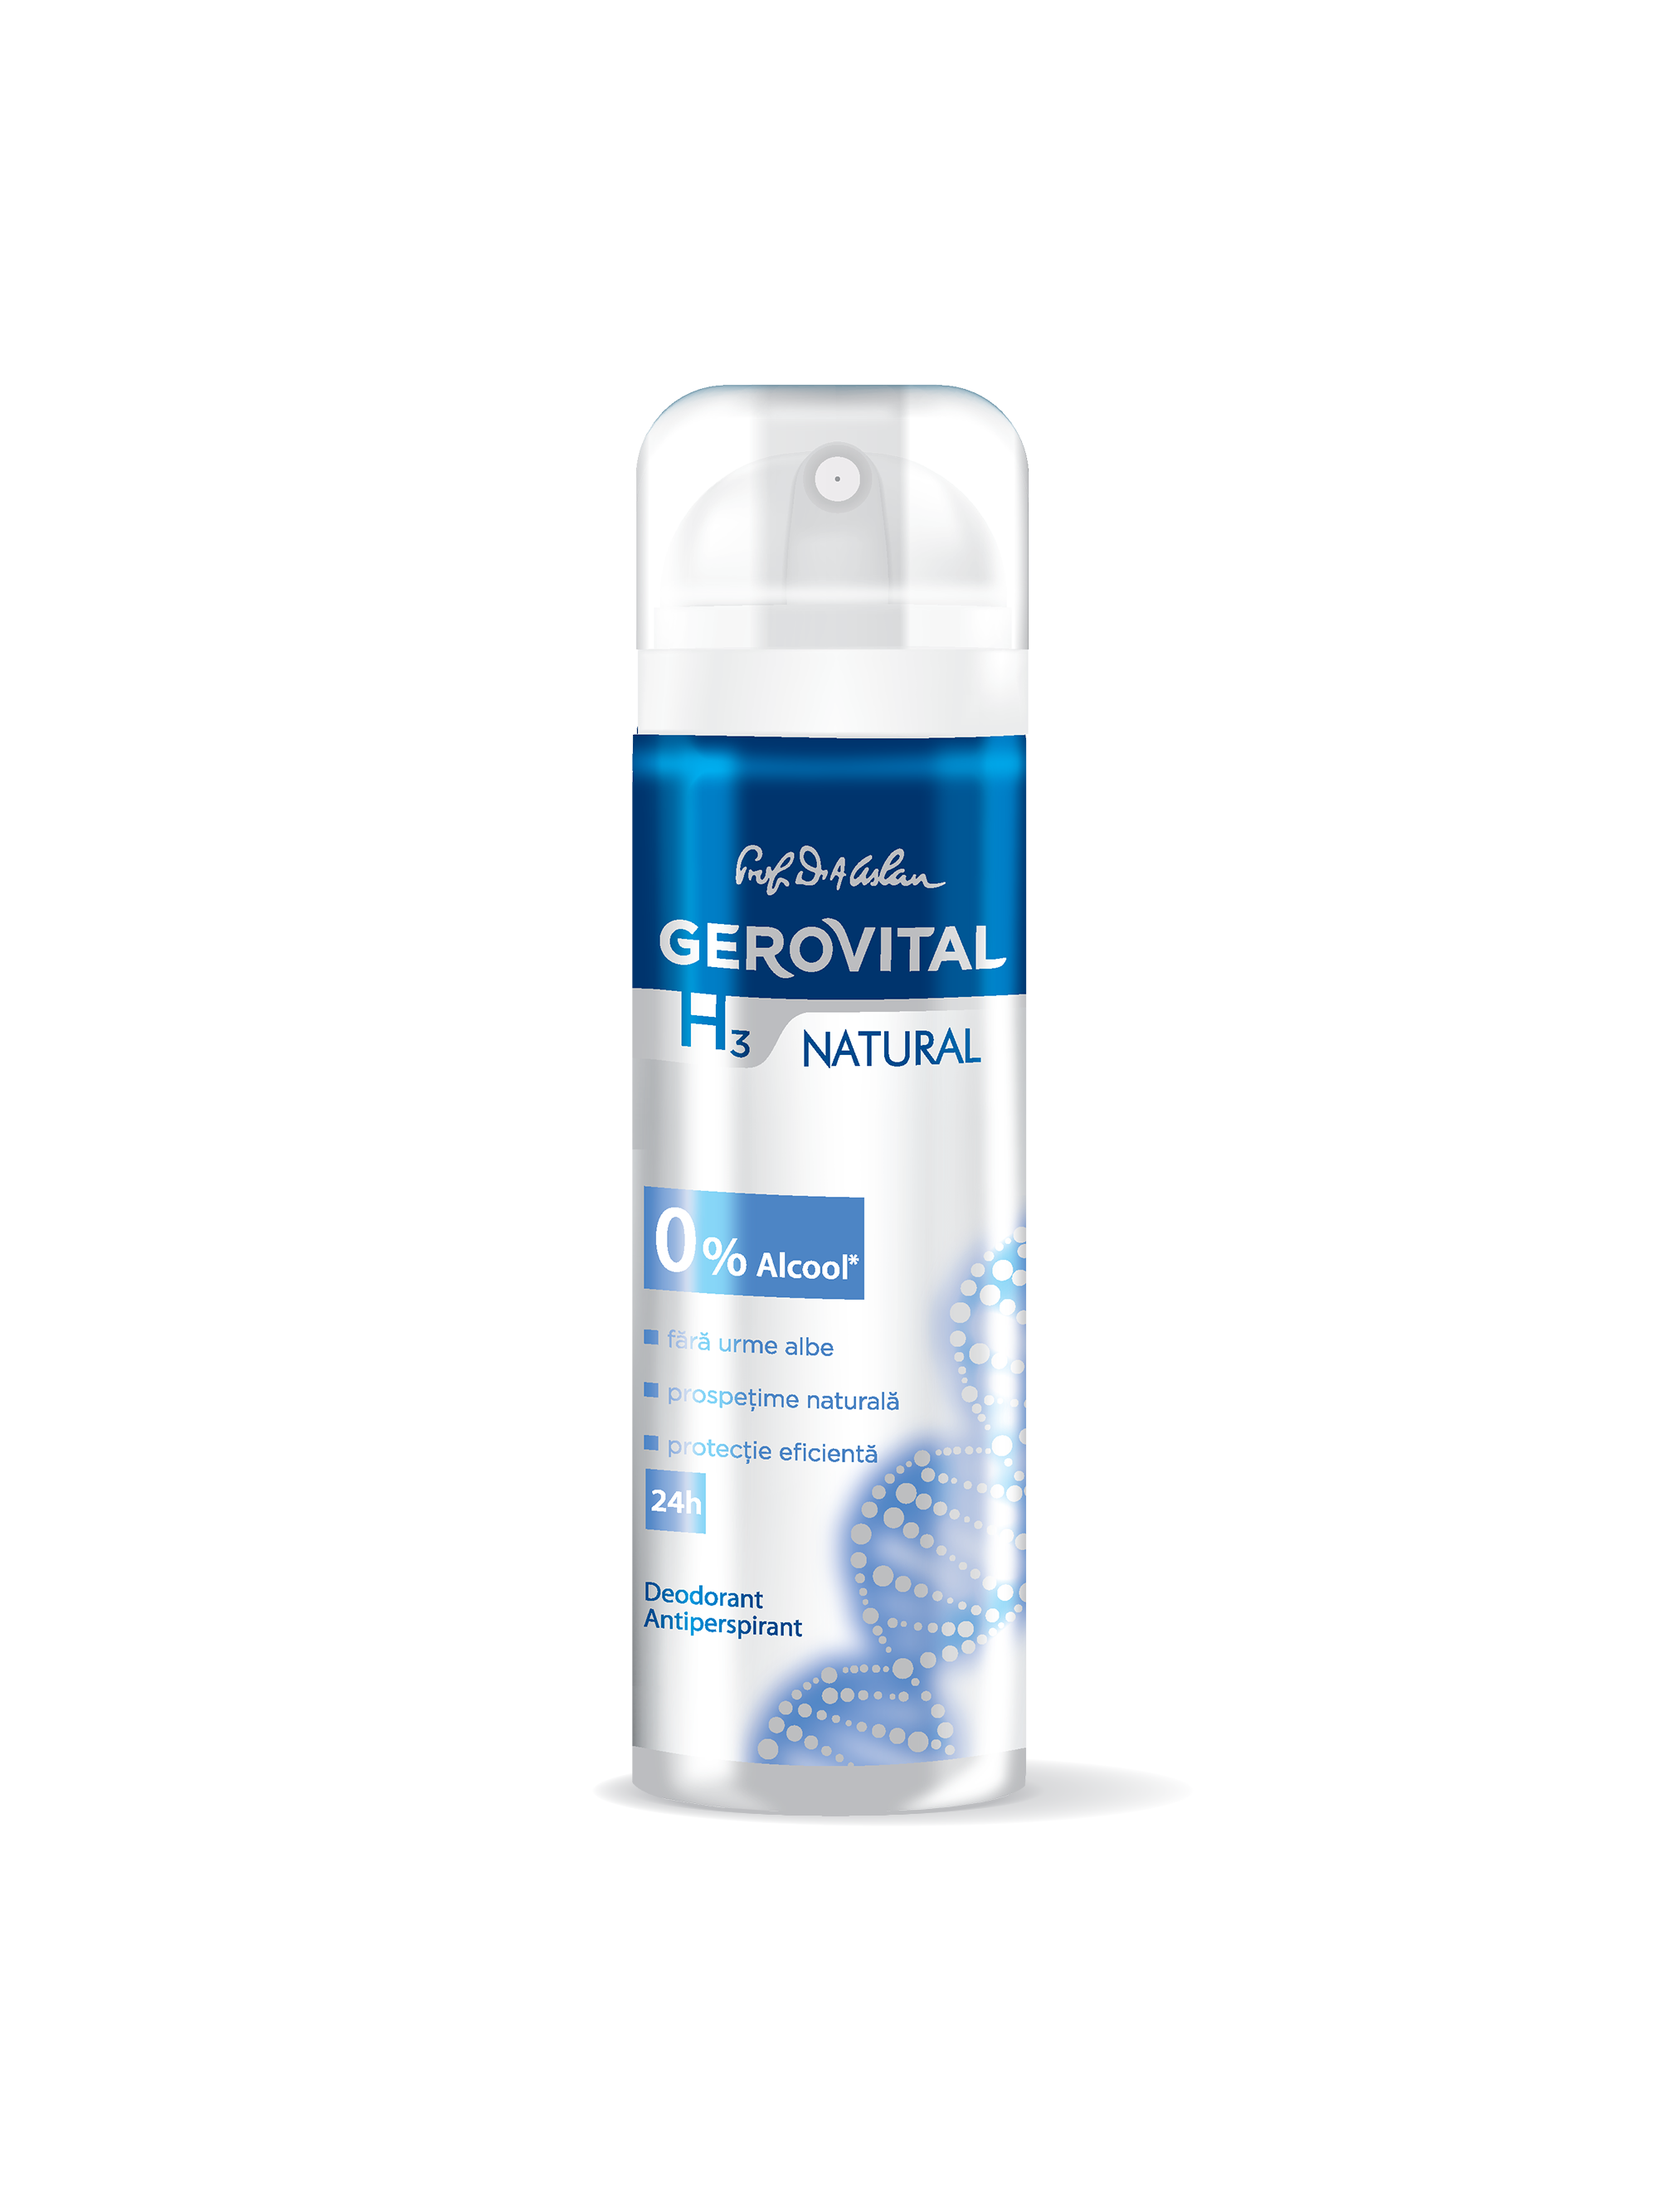 Deodorant Antiperspirant Gerovital H3 – Natural